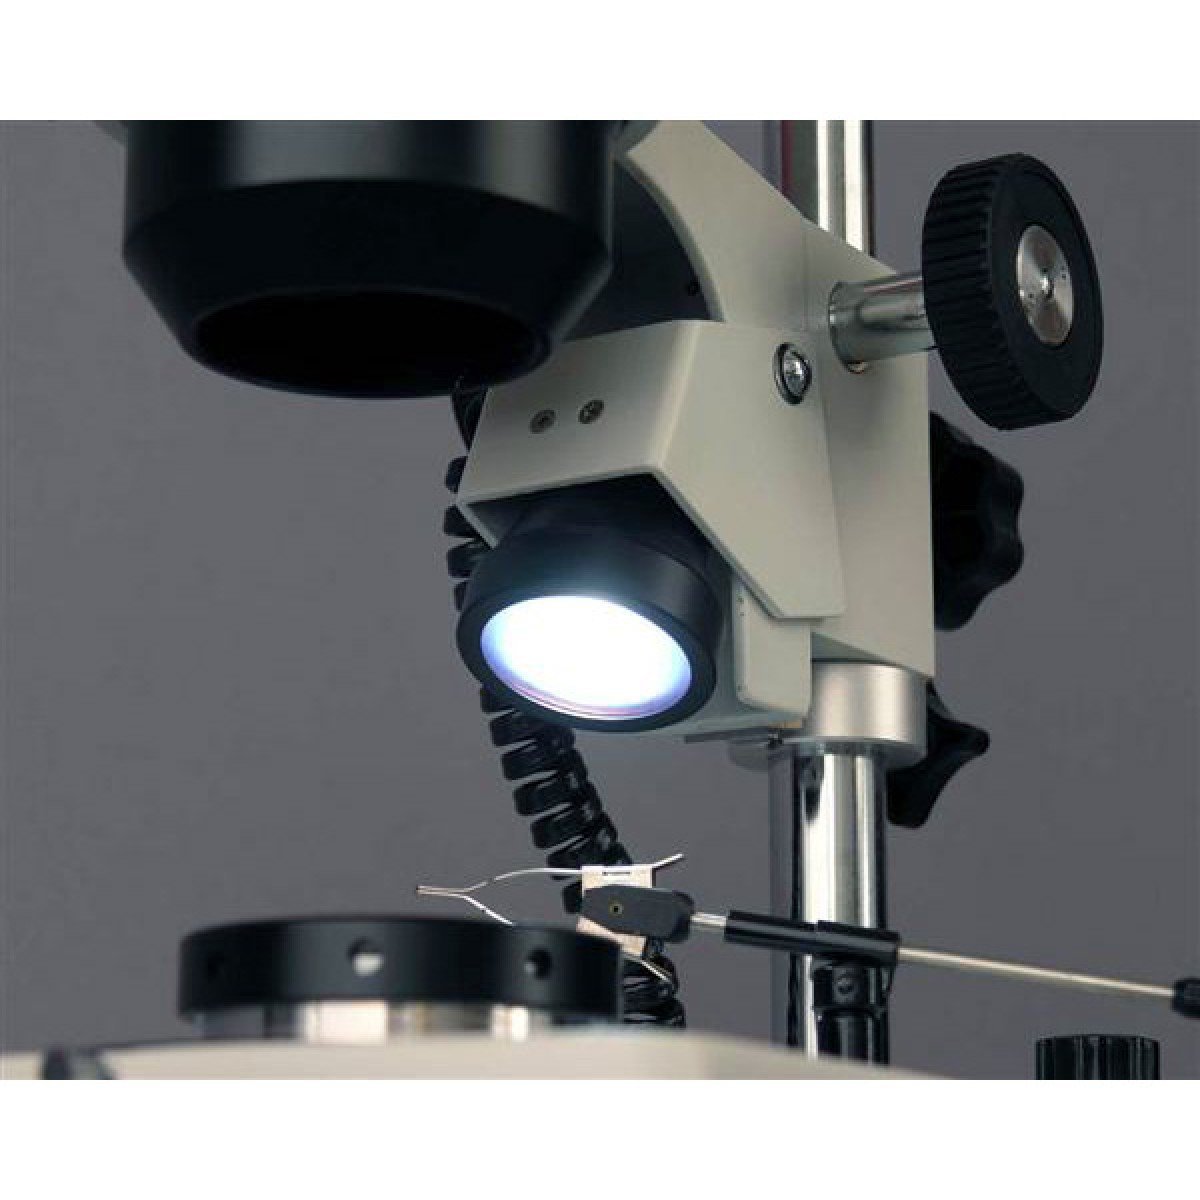 AmScope SH-2TY-DK-M Microscope